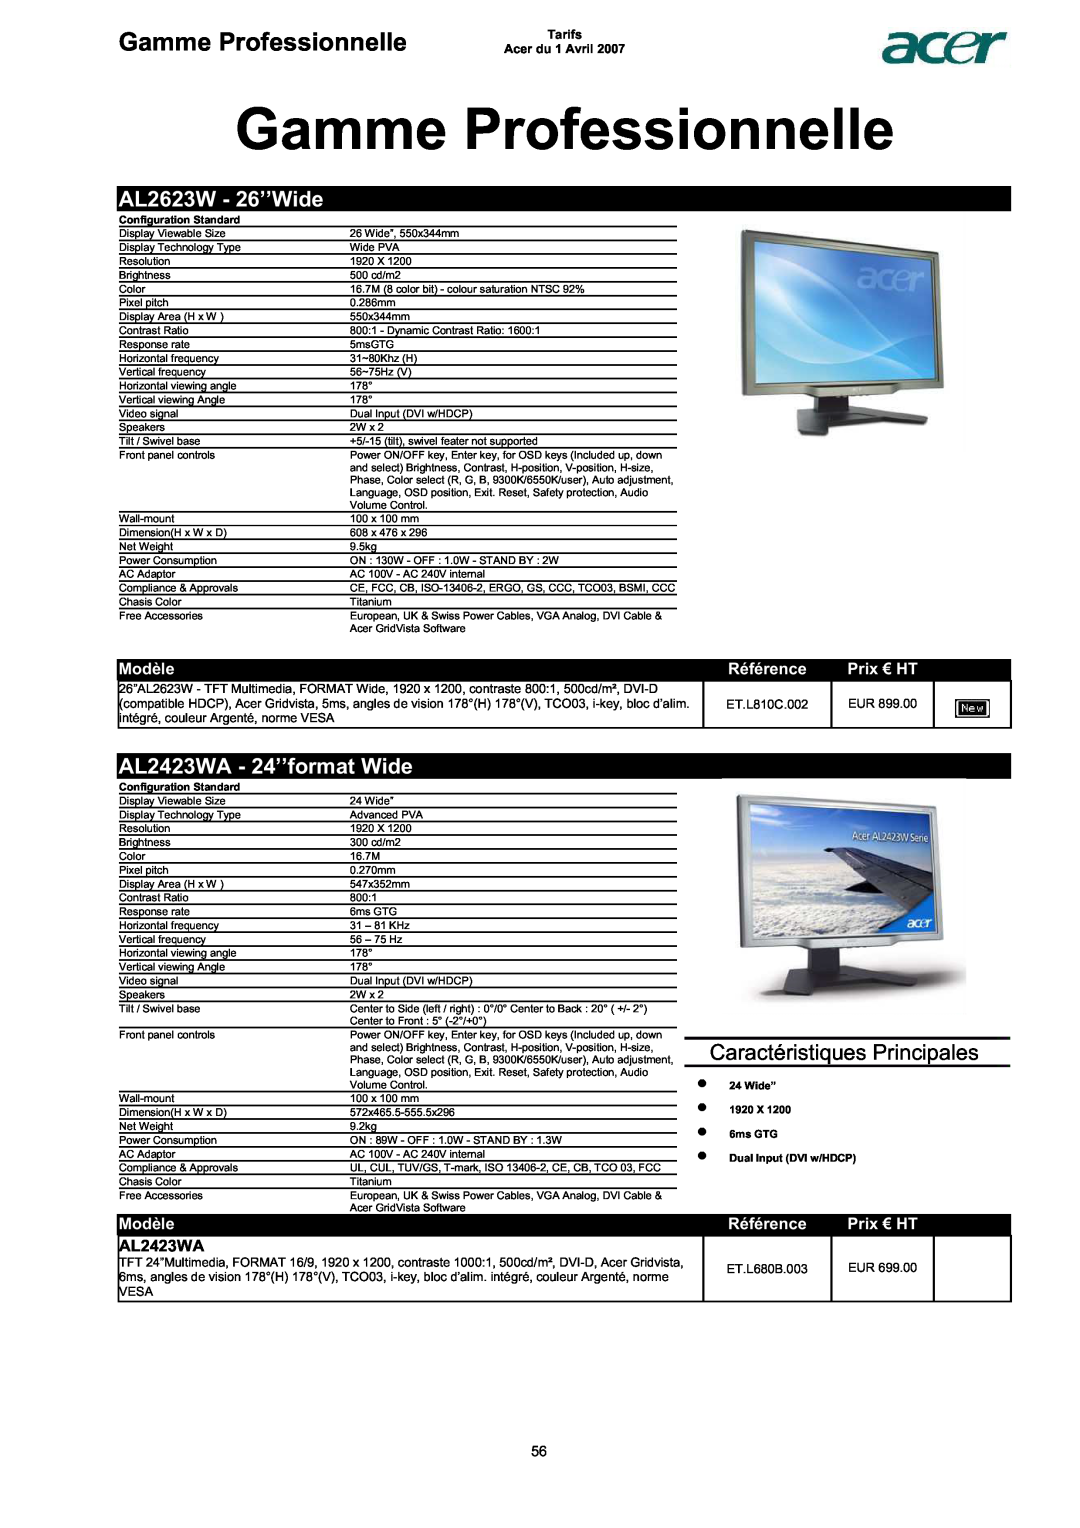 Acer AC713B-17 Gamme Professionnelle, AL2623W - 26’’Wide, AL2423WA - 24’’format Wide, Caractéristiques Principales, Modèle 